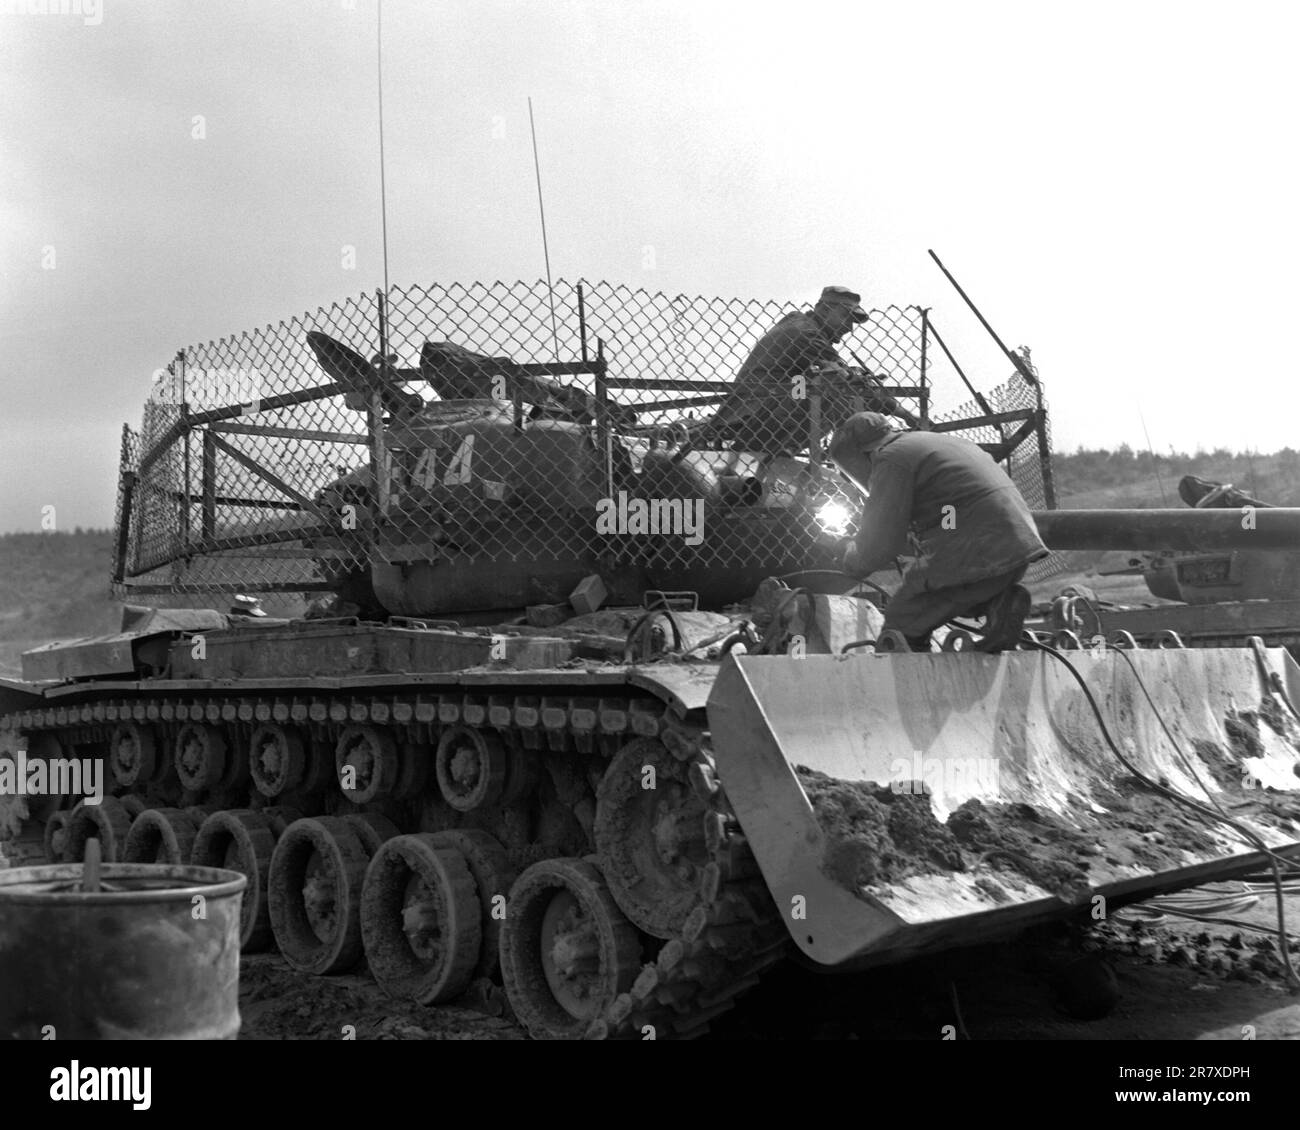 Ein M-46 Patton-Panzerdozer der Dog Company, 1. Panzerbattalion, mit einem Drahtzaun um den Geschützturm, der so konstruiert wurde, dass er 3,5 Raketen explodiert, die der Feind abfeuert, bevor sie den Panzer treffen. Der Drahtzaun dreht sich mit dem Geschützturm. Stockfoto